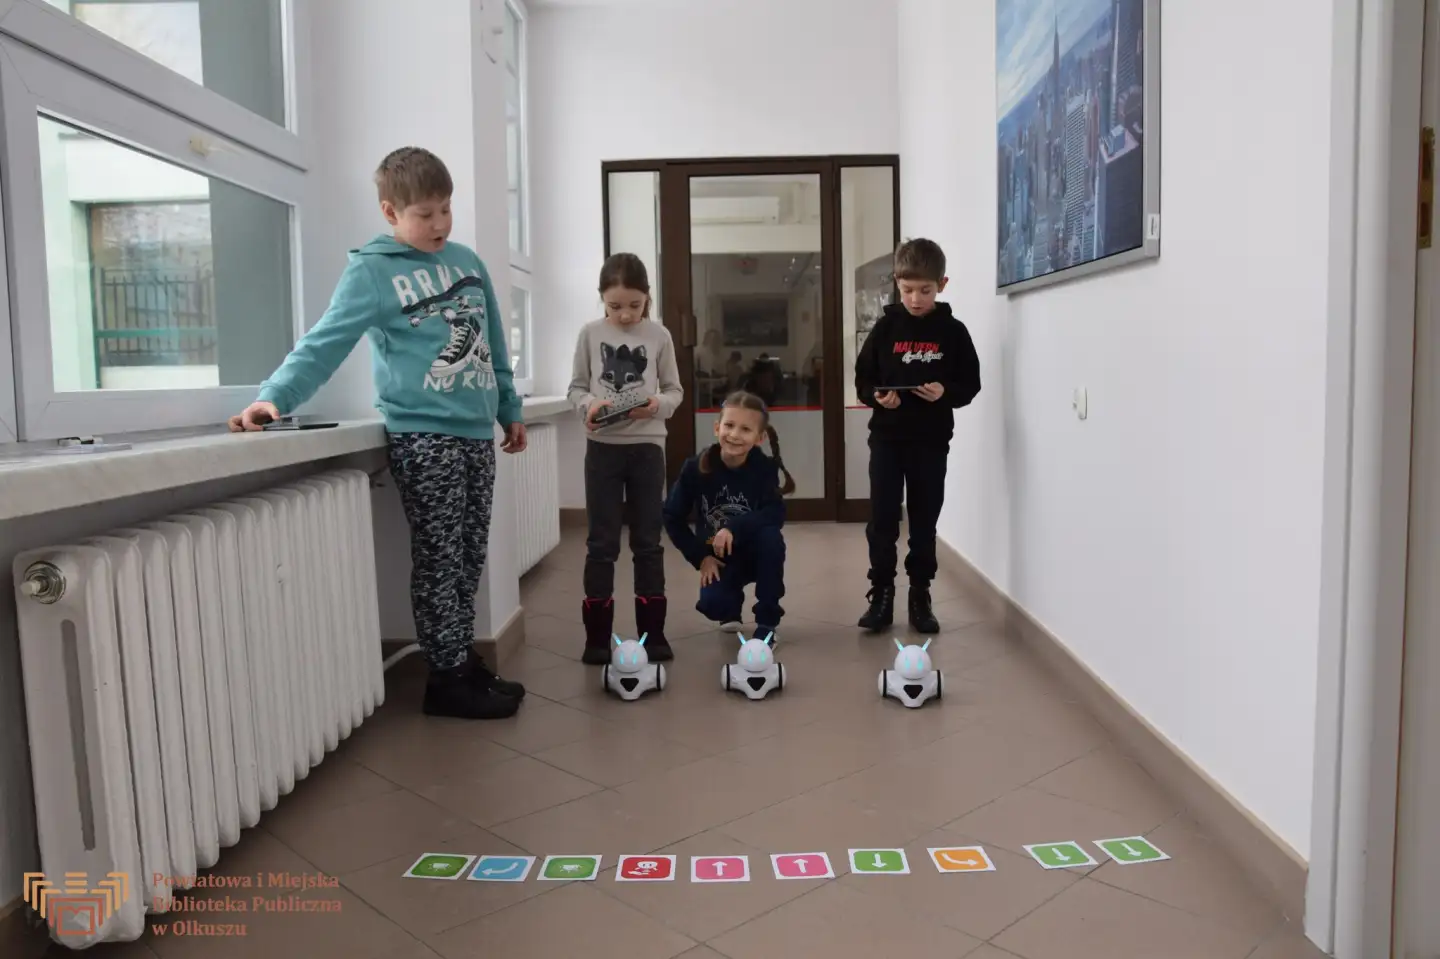 Zdjęcie przedstawia 4 dzieci stojącą na korytarzu Biblioteki. Przed dziećmi widoczne są trzy roboty (photon'y) oraz kartki ze strzałkami.